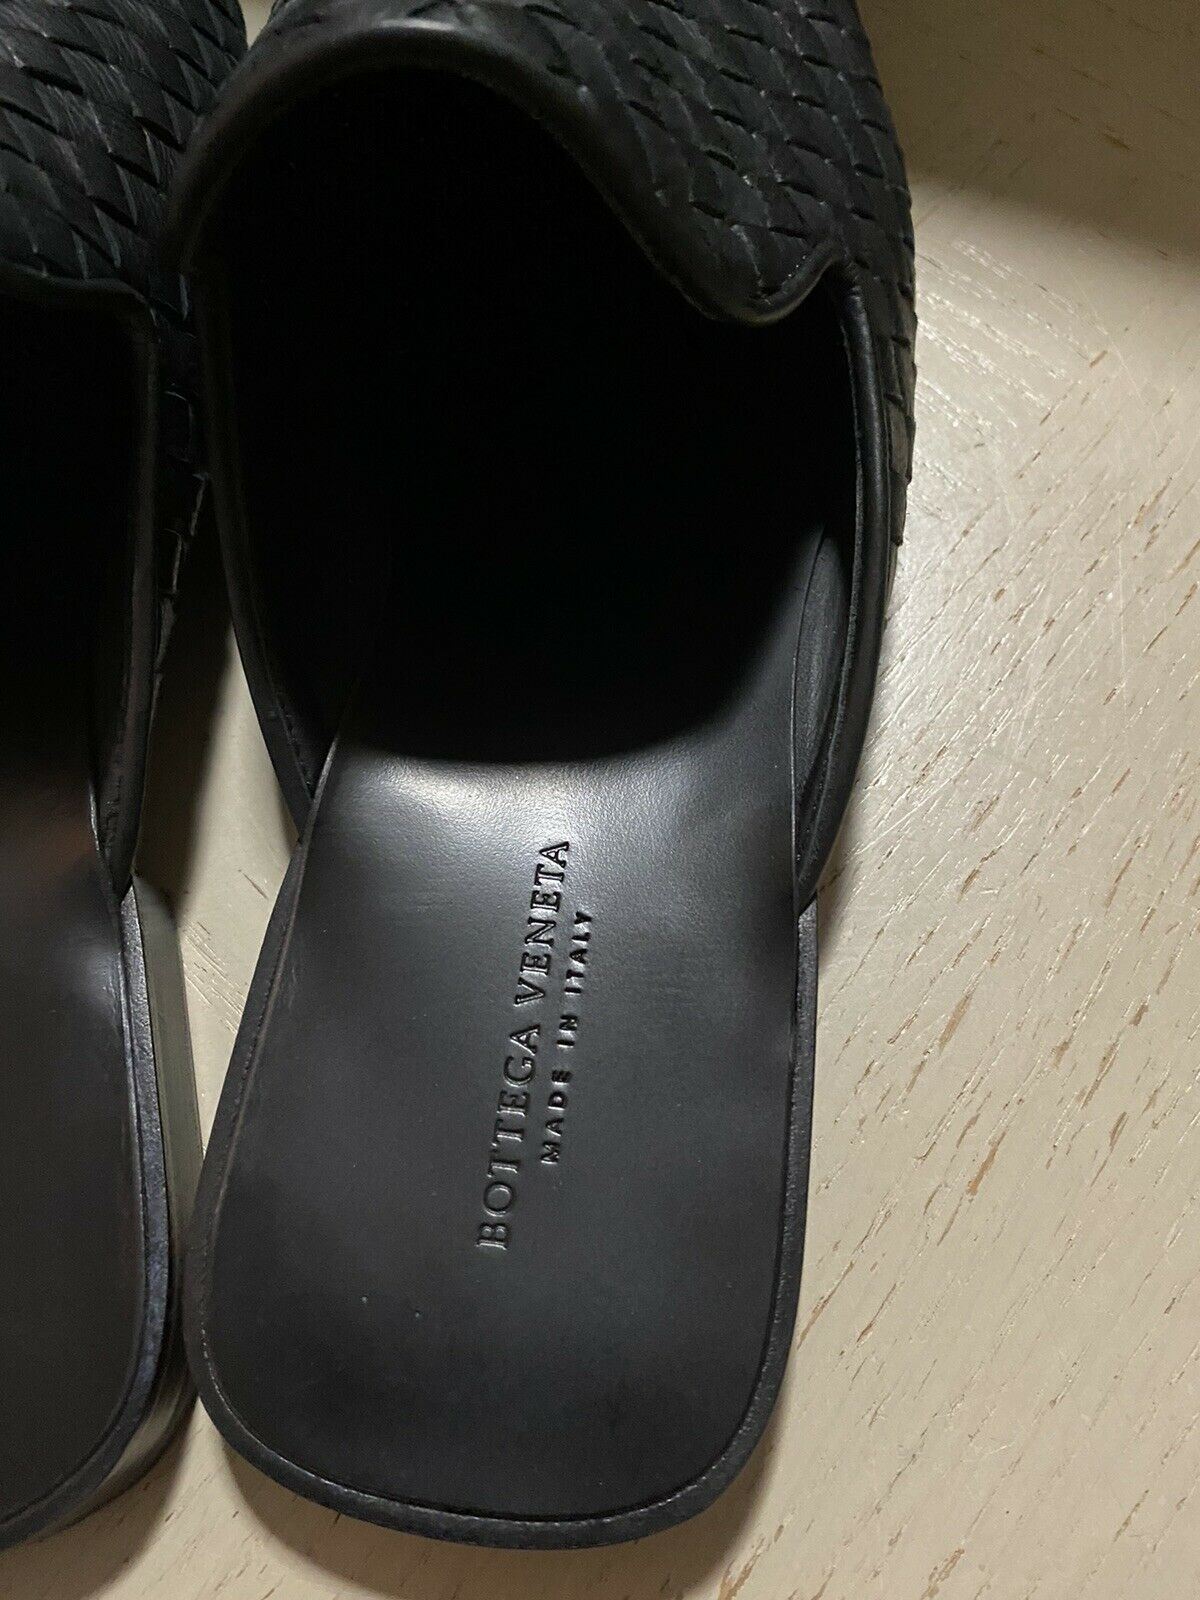 NIB Bottega Veneta Herren Slipper Sandale Schuhe Schwarz 6 US/39 Eu Italien